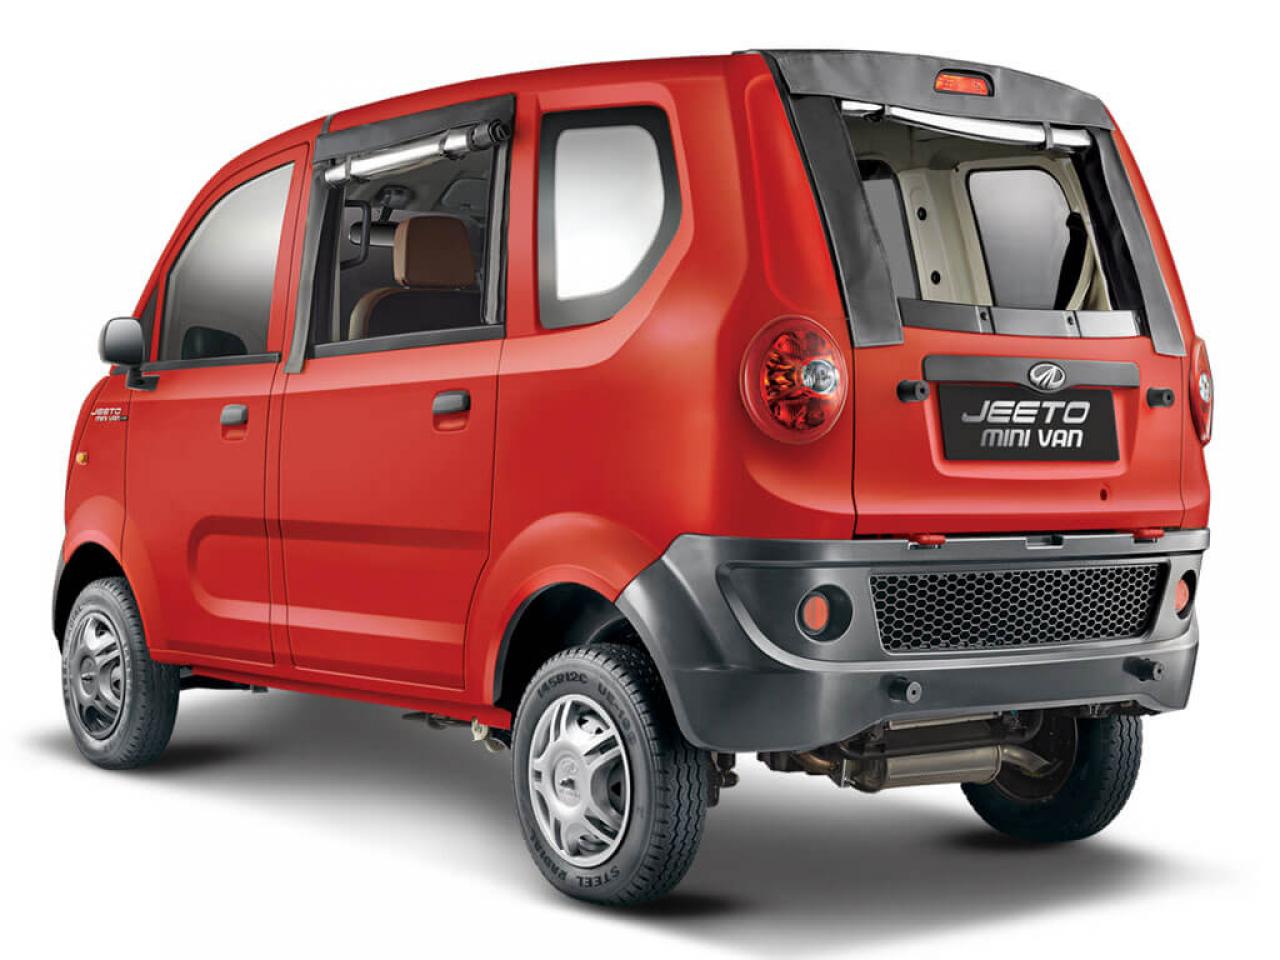 Mahindra Jeeto Minivan launched at Rs 